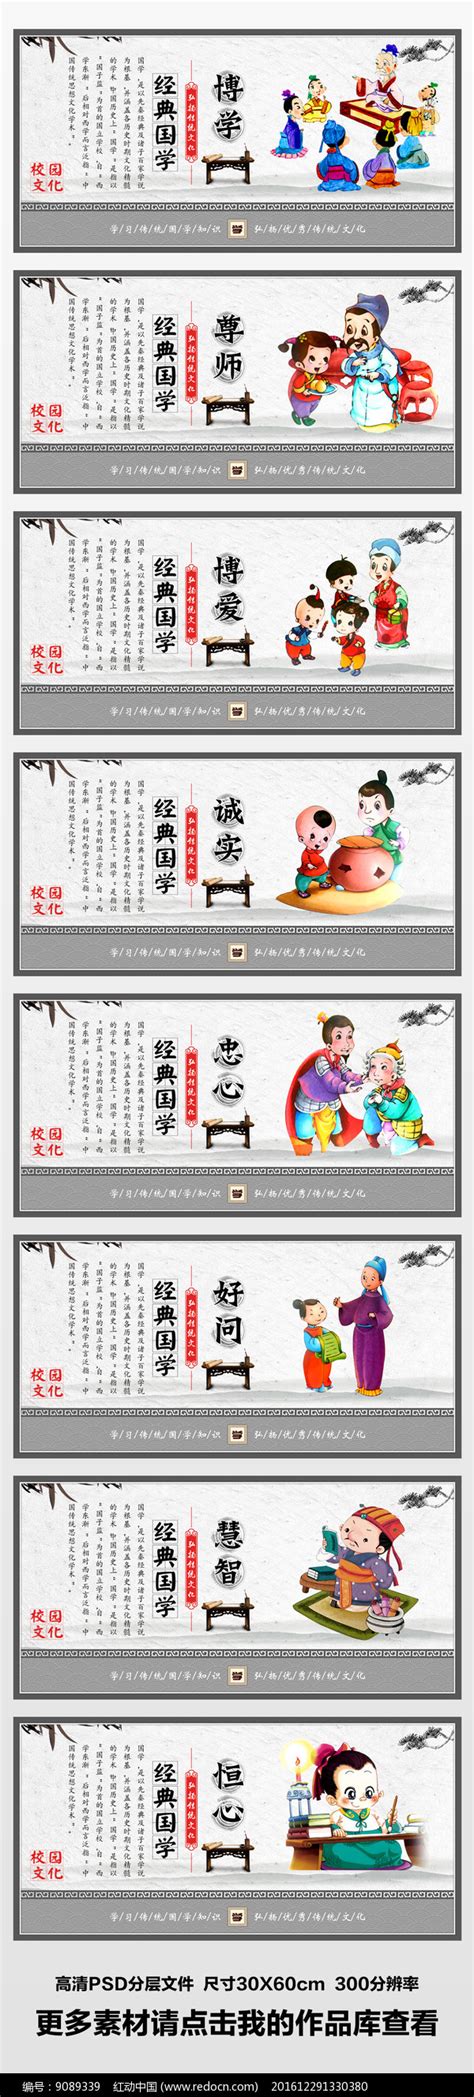 整套大气校园国学经典文化展板图片下载_红动中国